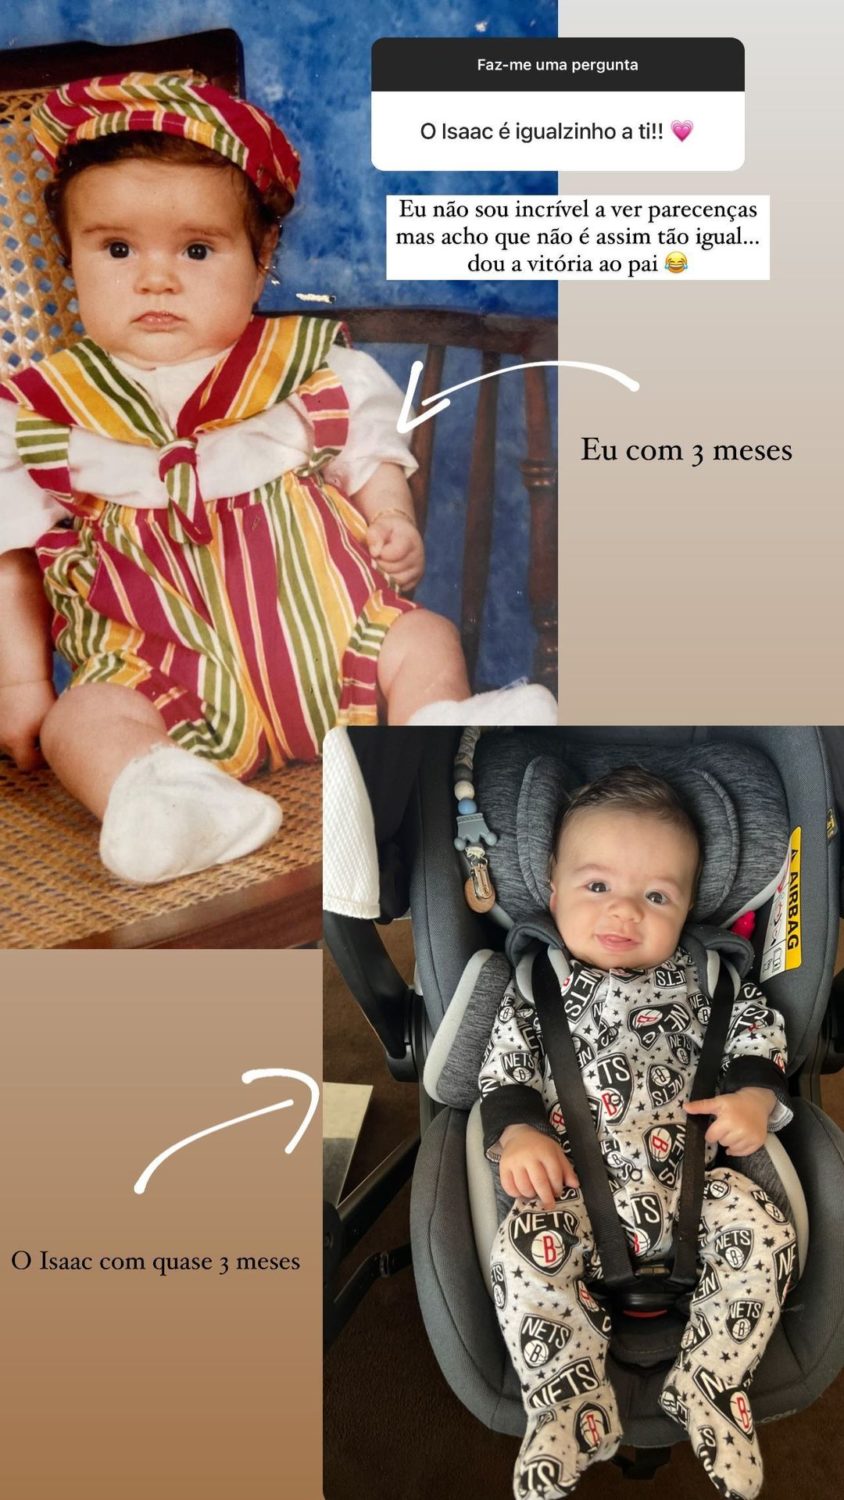 Tira-teimas! Jéssica Antunes revela fotografia em bebé e fãs atiram: “O Isaac é igualzinho a ti…”